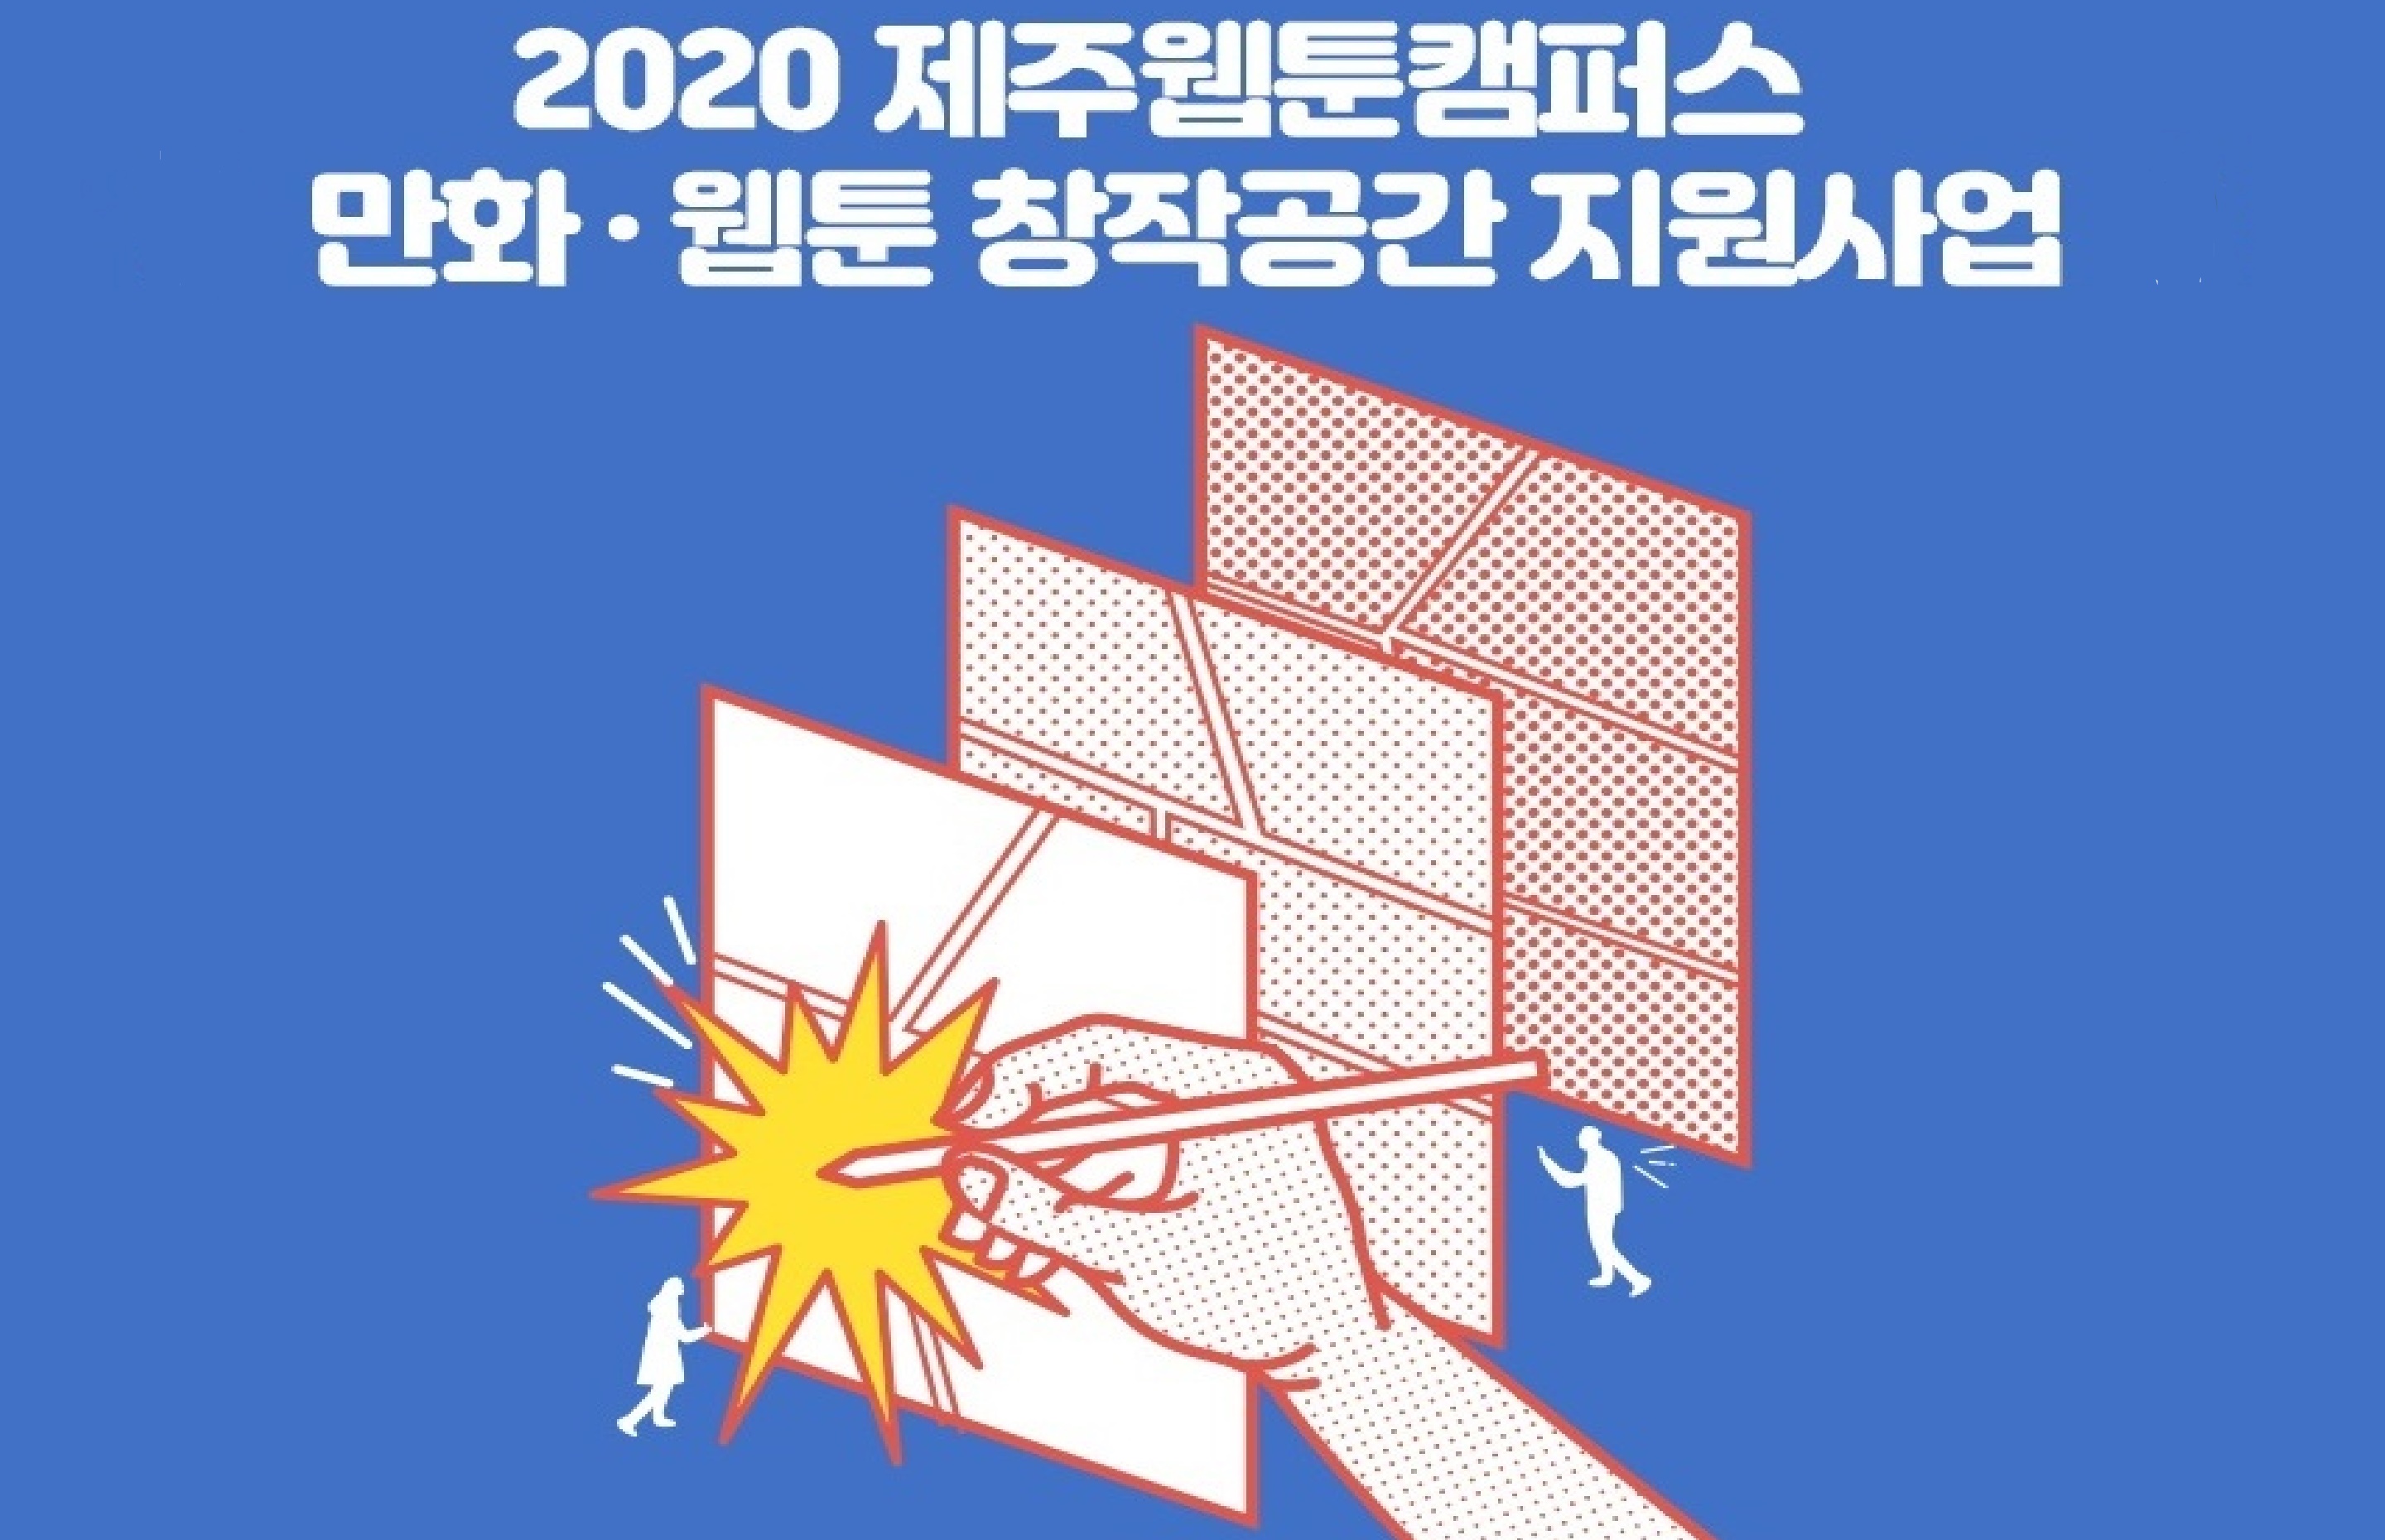 [모집공고] 2020 제주웹툰캠퍼스 만화·웹툰 창작공간 지원사업 모집 공고